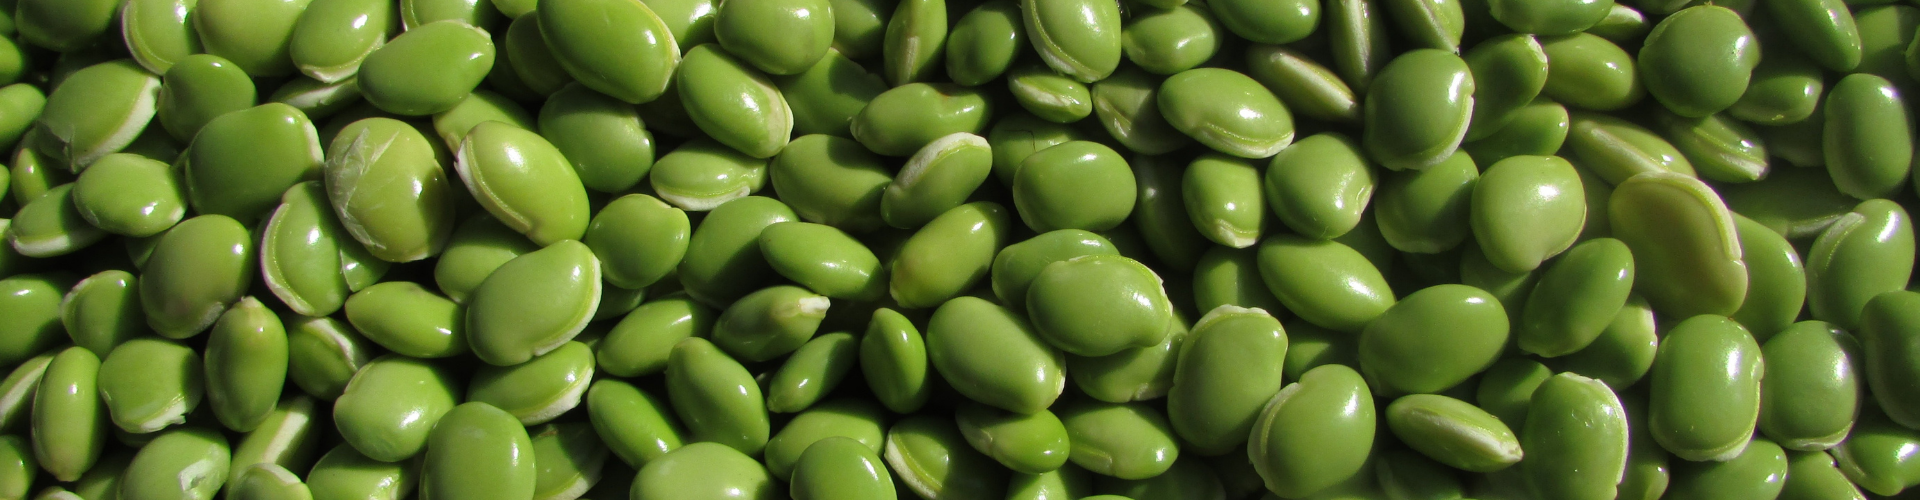 La fève : semis, culture et récolte - Blog - Dr. Jonquille & Mr. Ail